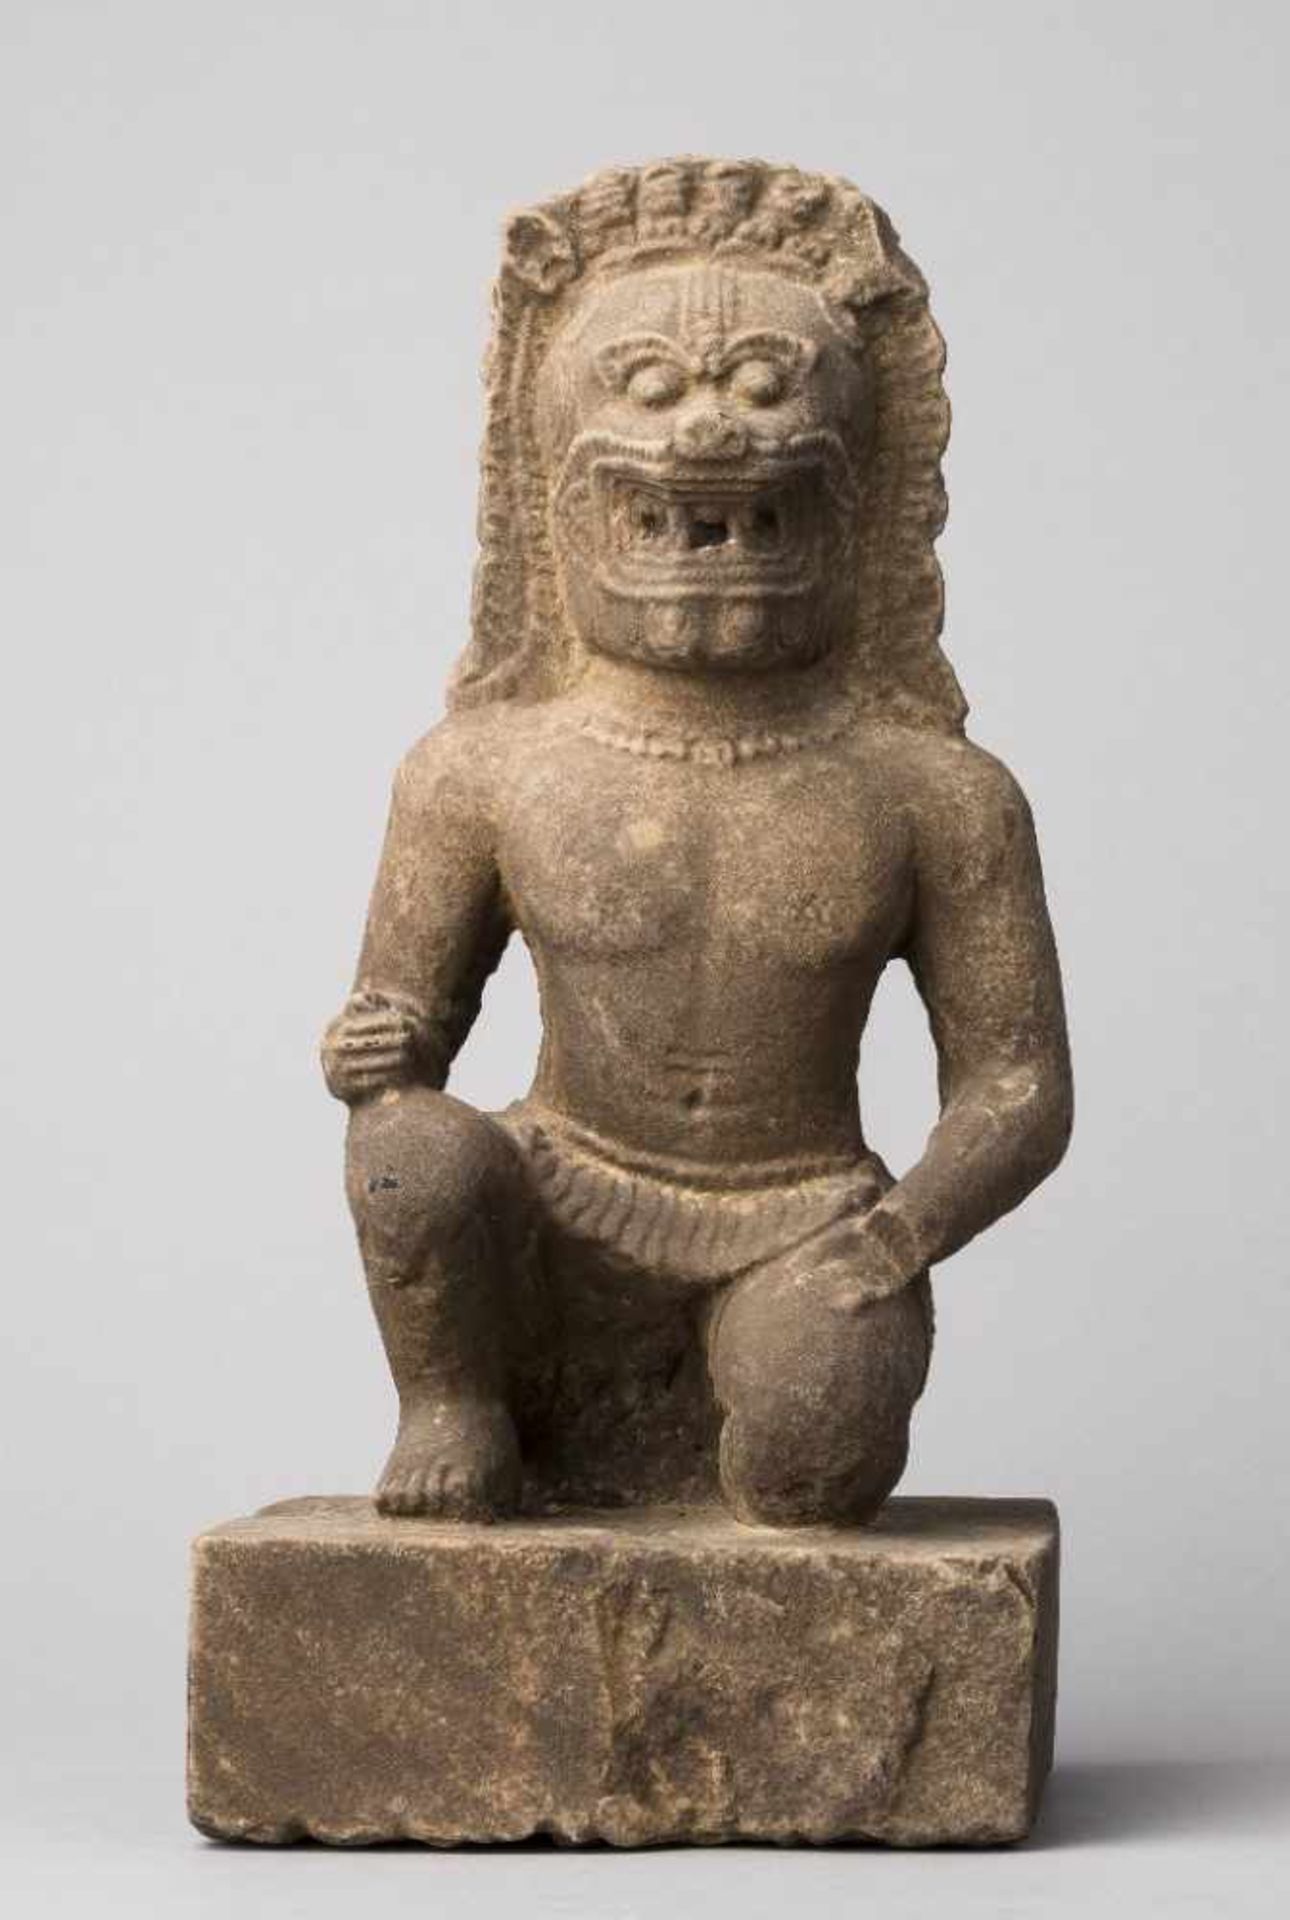 Wächterfigur mit Löwenhaupt, mit einem Bein auf quadratischem Plinthensockel kniend. Stein,